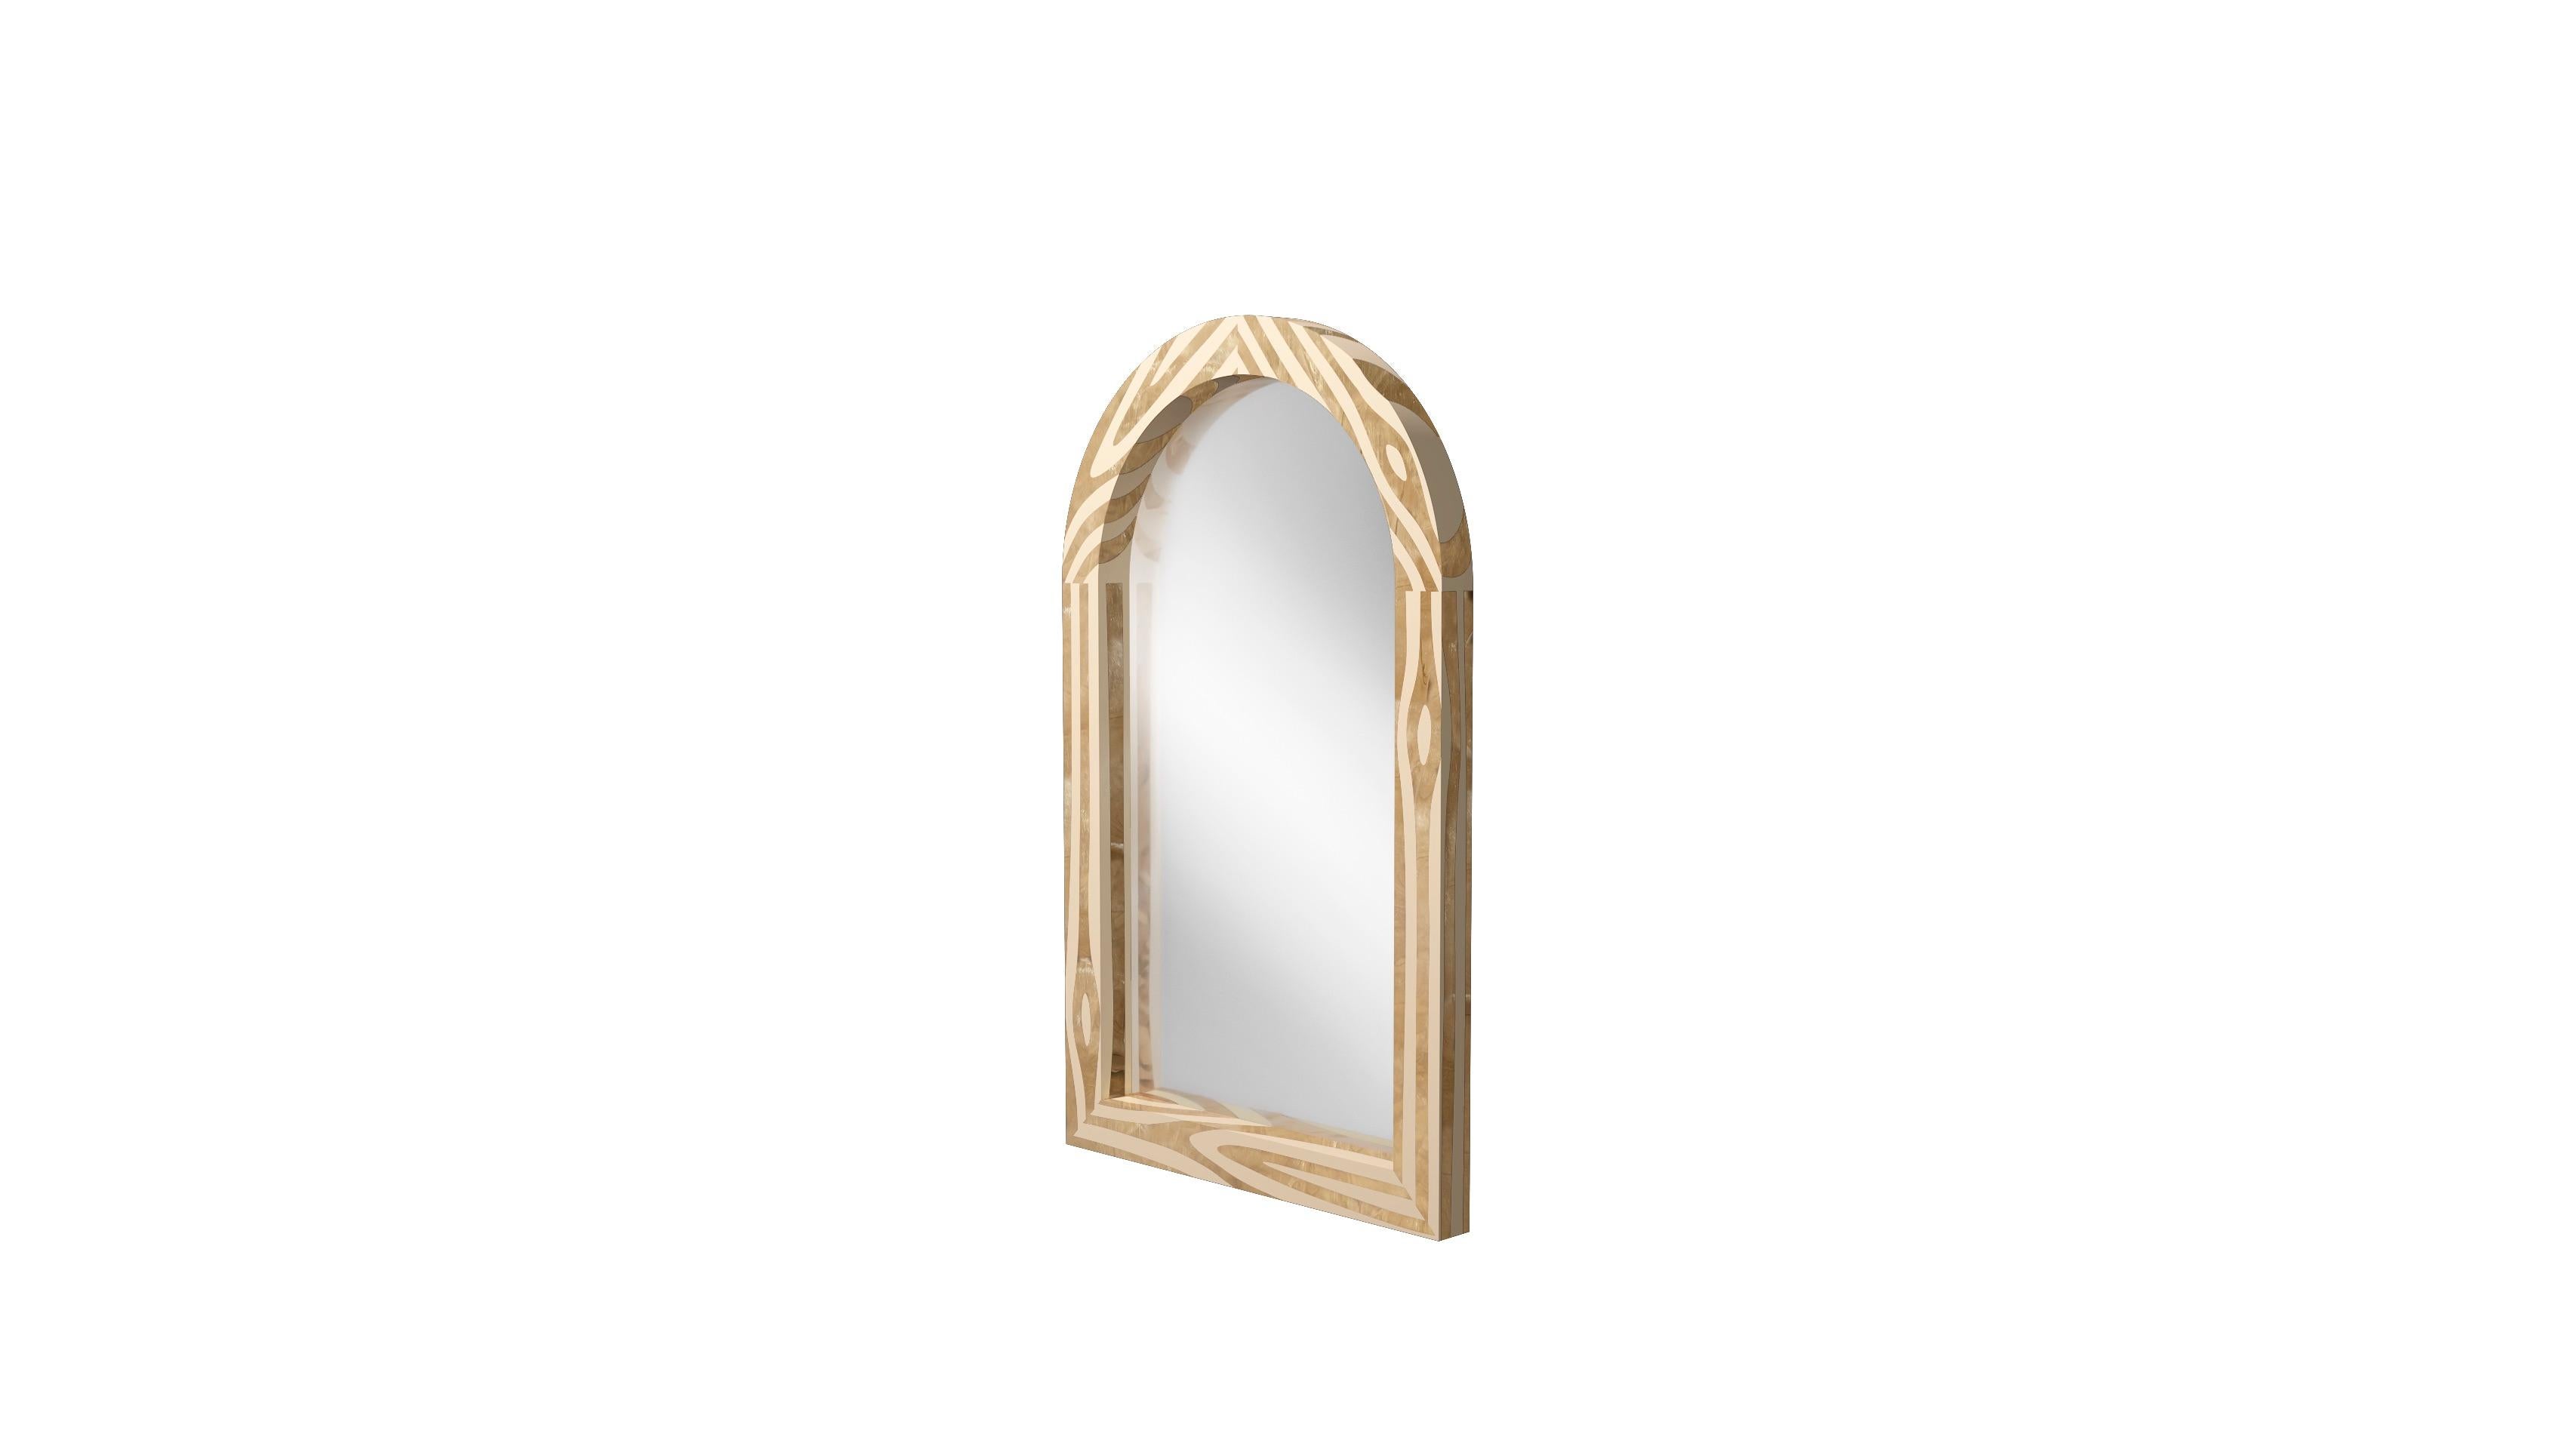 Le miroir console mural Nature avec incrustation en laiton de MARCANTONIO est un miroir arqué, dont le cadre est incrusté de laiton rappelant la beauté du bois naturel. 

Pour ses premières créations, MARCANTONIO a introduit 